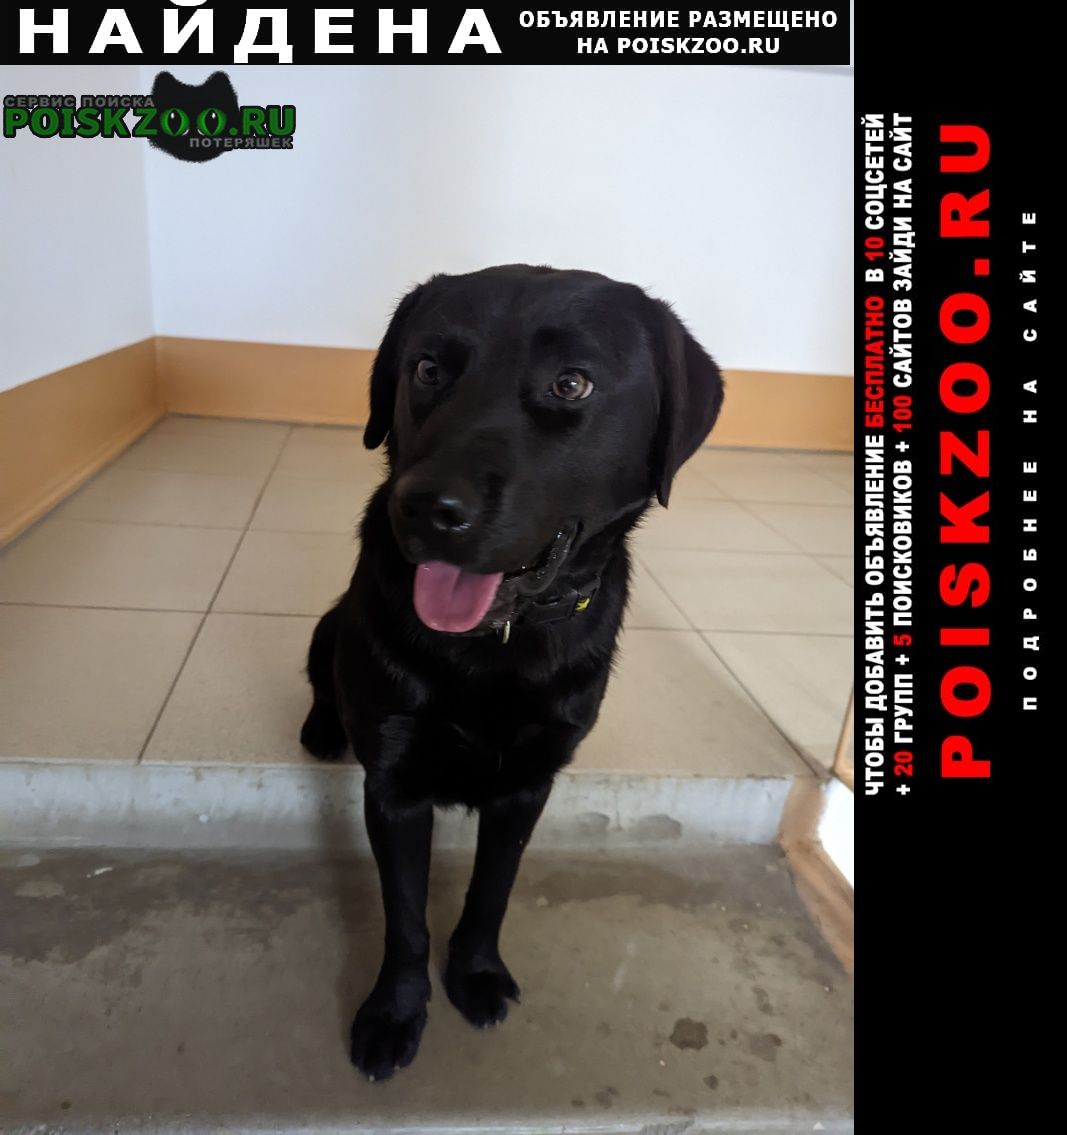 Найдена собака кобель лабрадор чёрный Краснодар